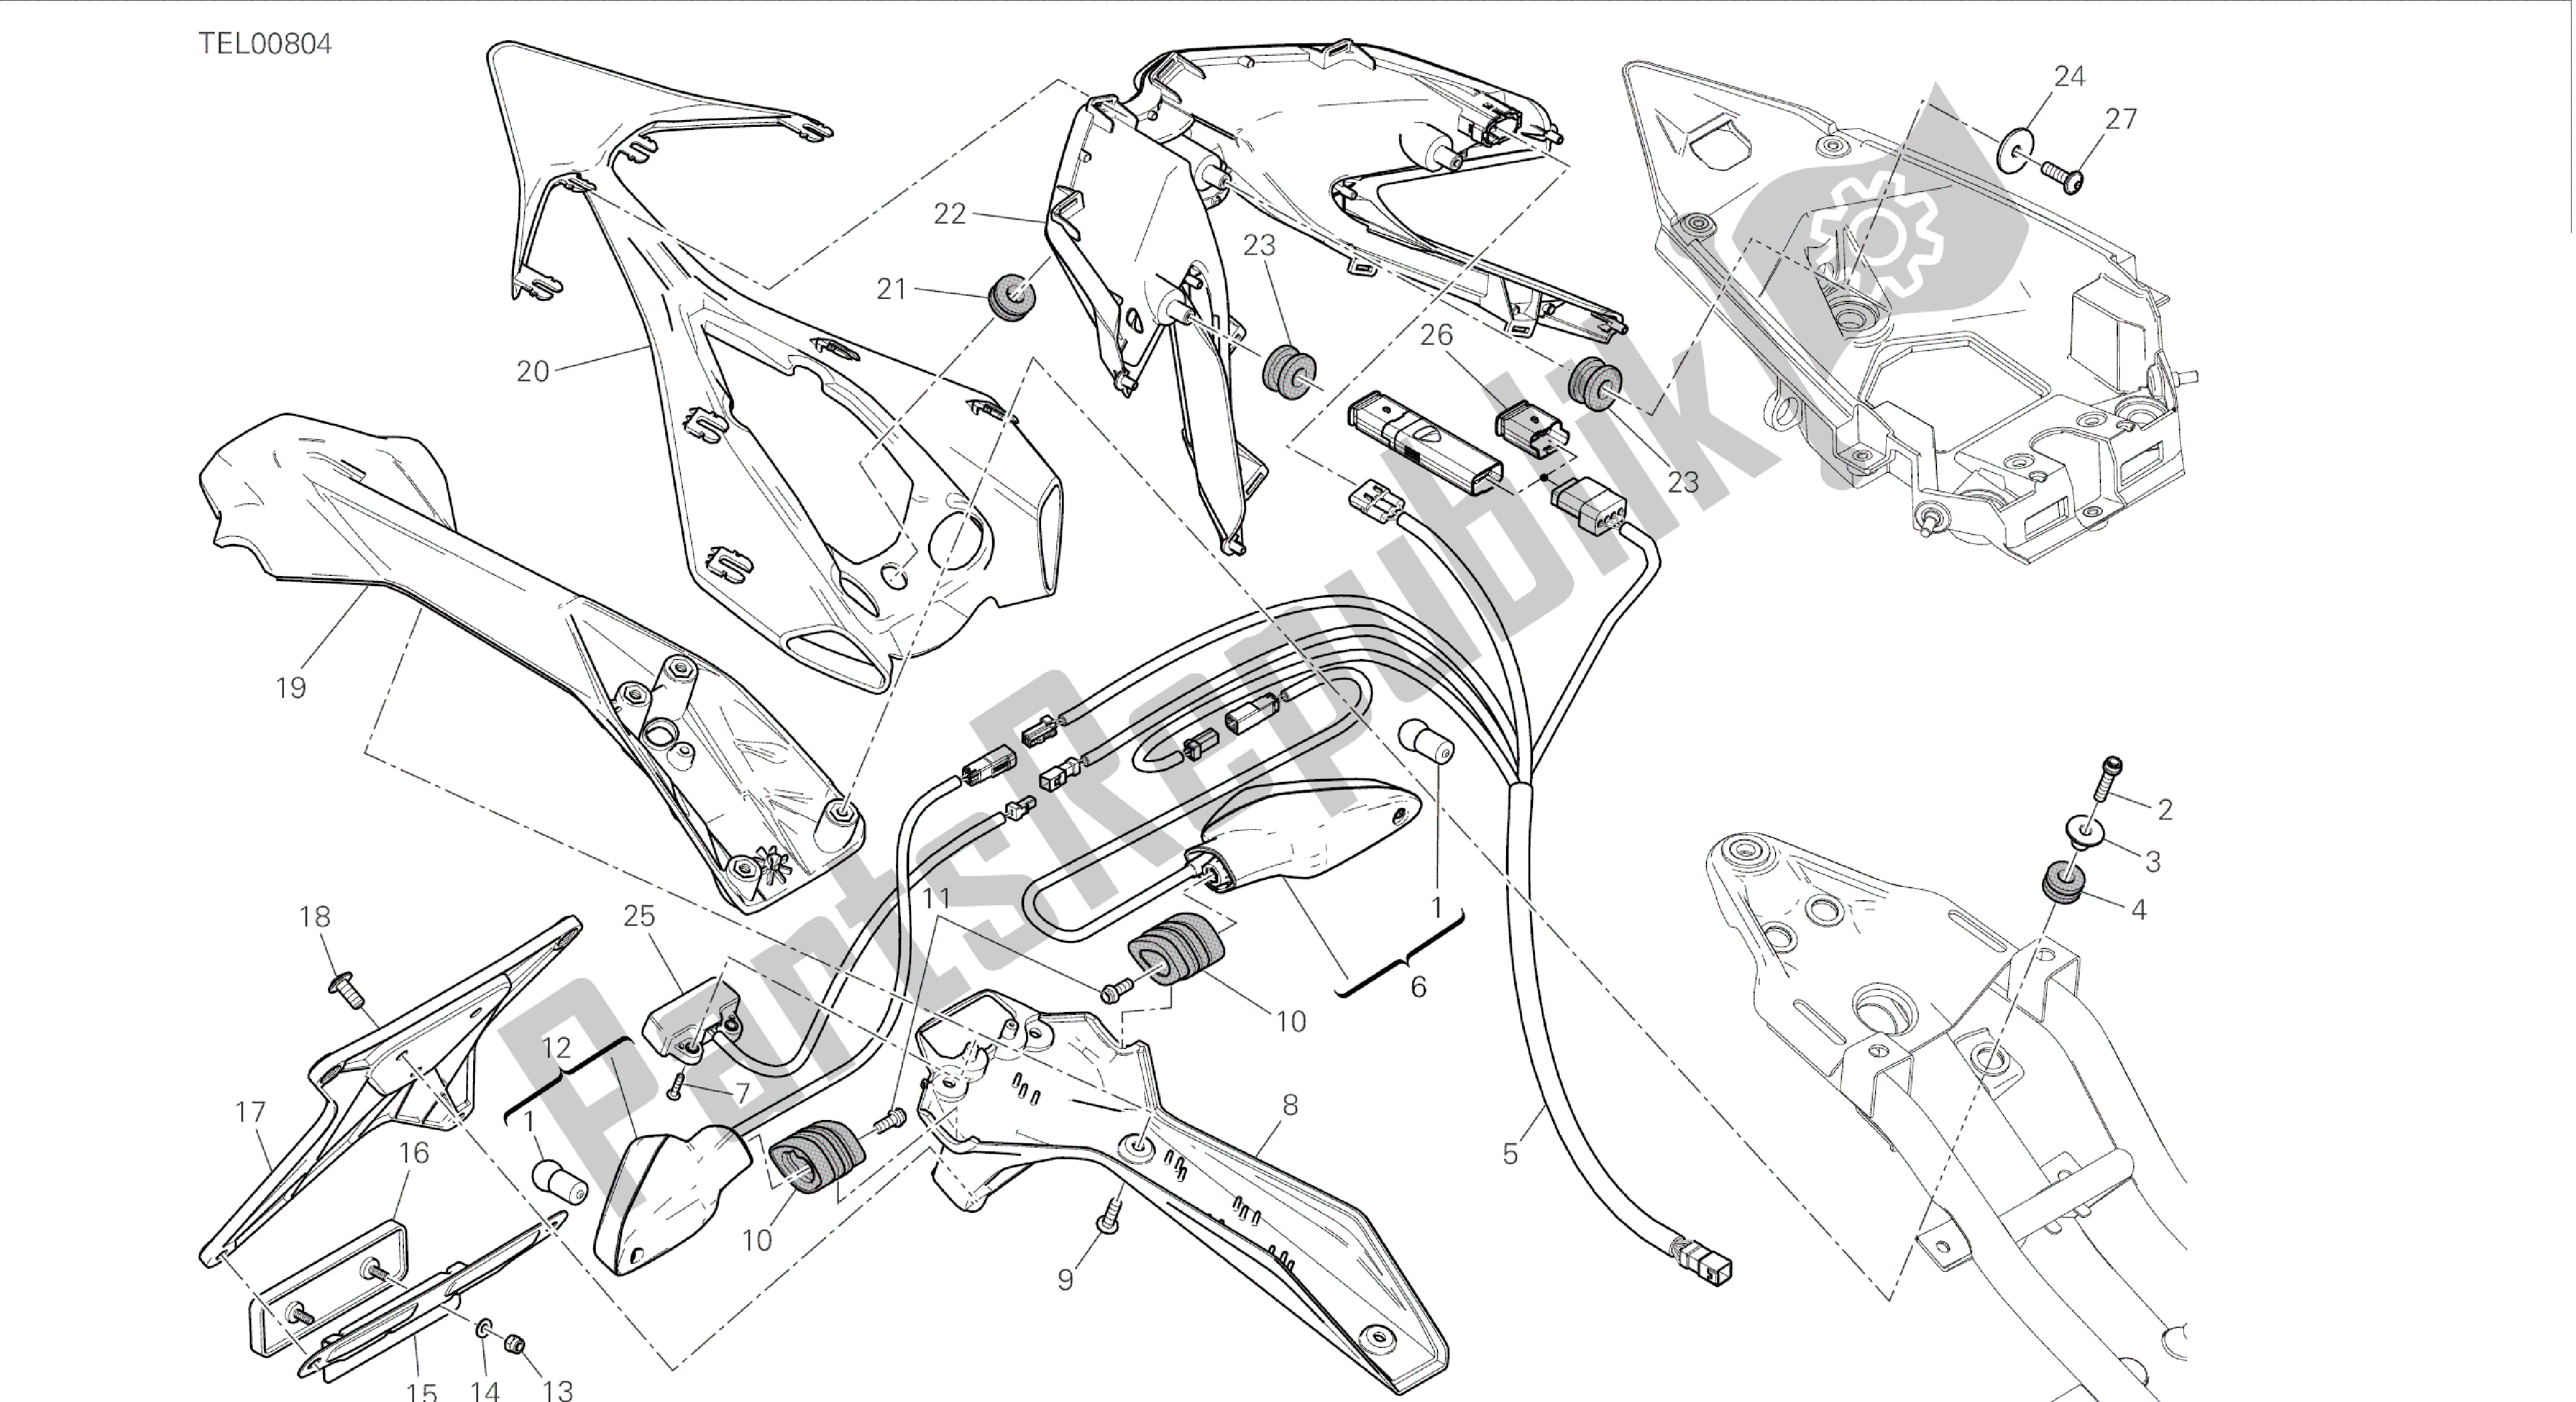 Todas las partes para Dibujo 27a - Soporte De Matrícula - Luz Trasera [mod: 899 Abs, 899aws; Marco De Grupo Xst: Eur, Fra, Jap, Twn] de Ducati Panigale 899 2015